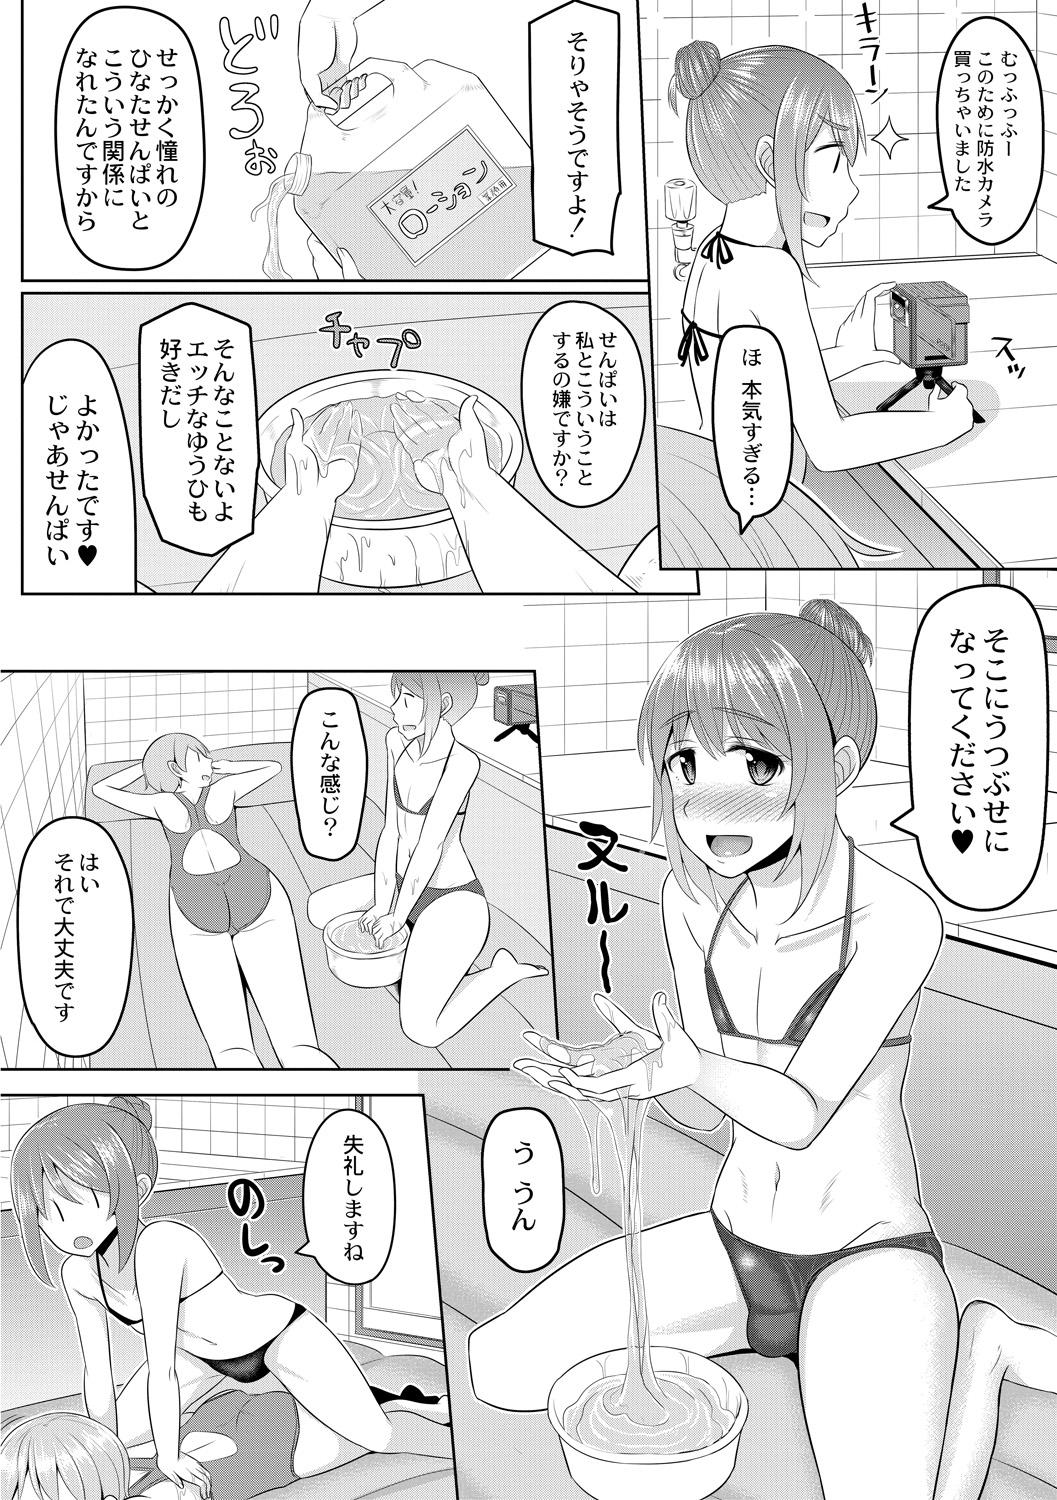 Rubbing Cosplay Otokonoko-tachi ~ Ushiro no Ana ni Iretai Kankei Ch. 2 Senpai to Ofuroba Nurunuru Ecchi Love Making - Page 4